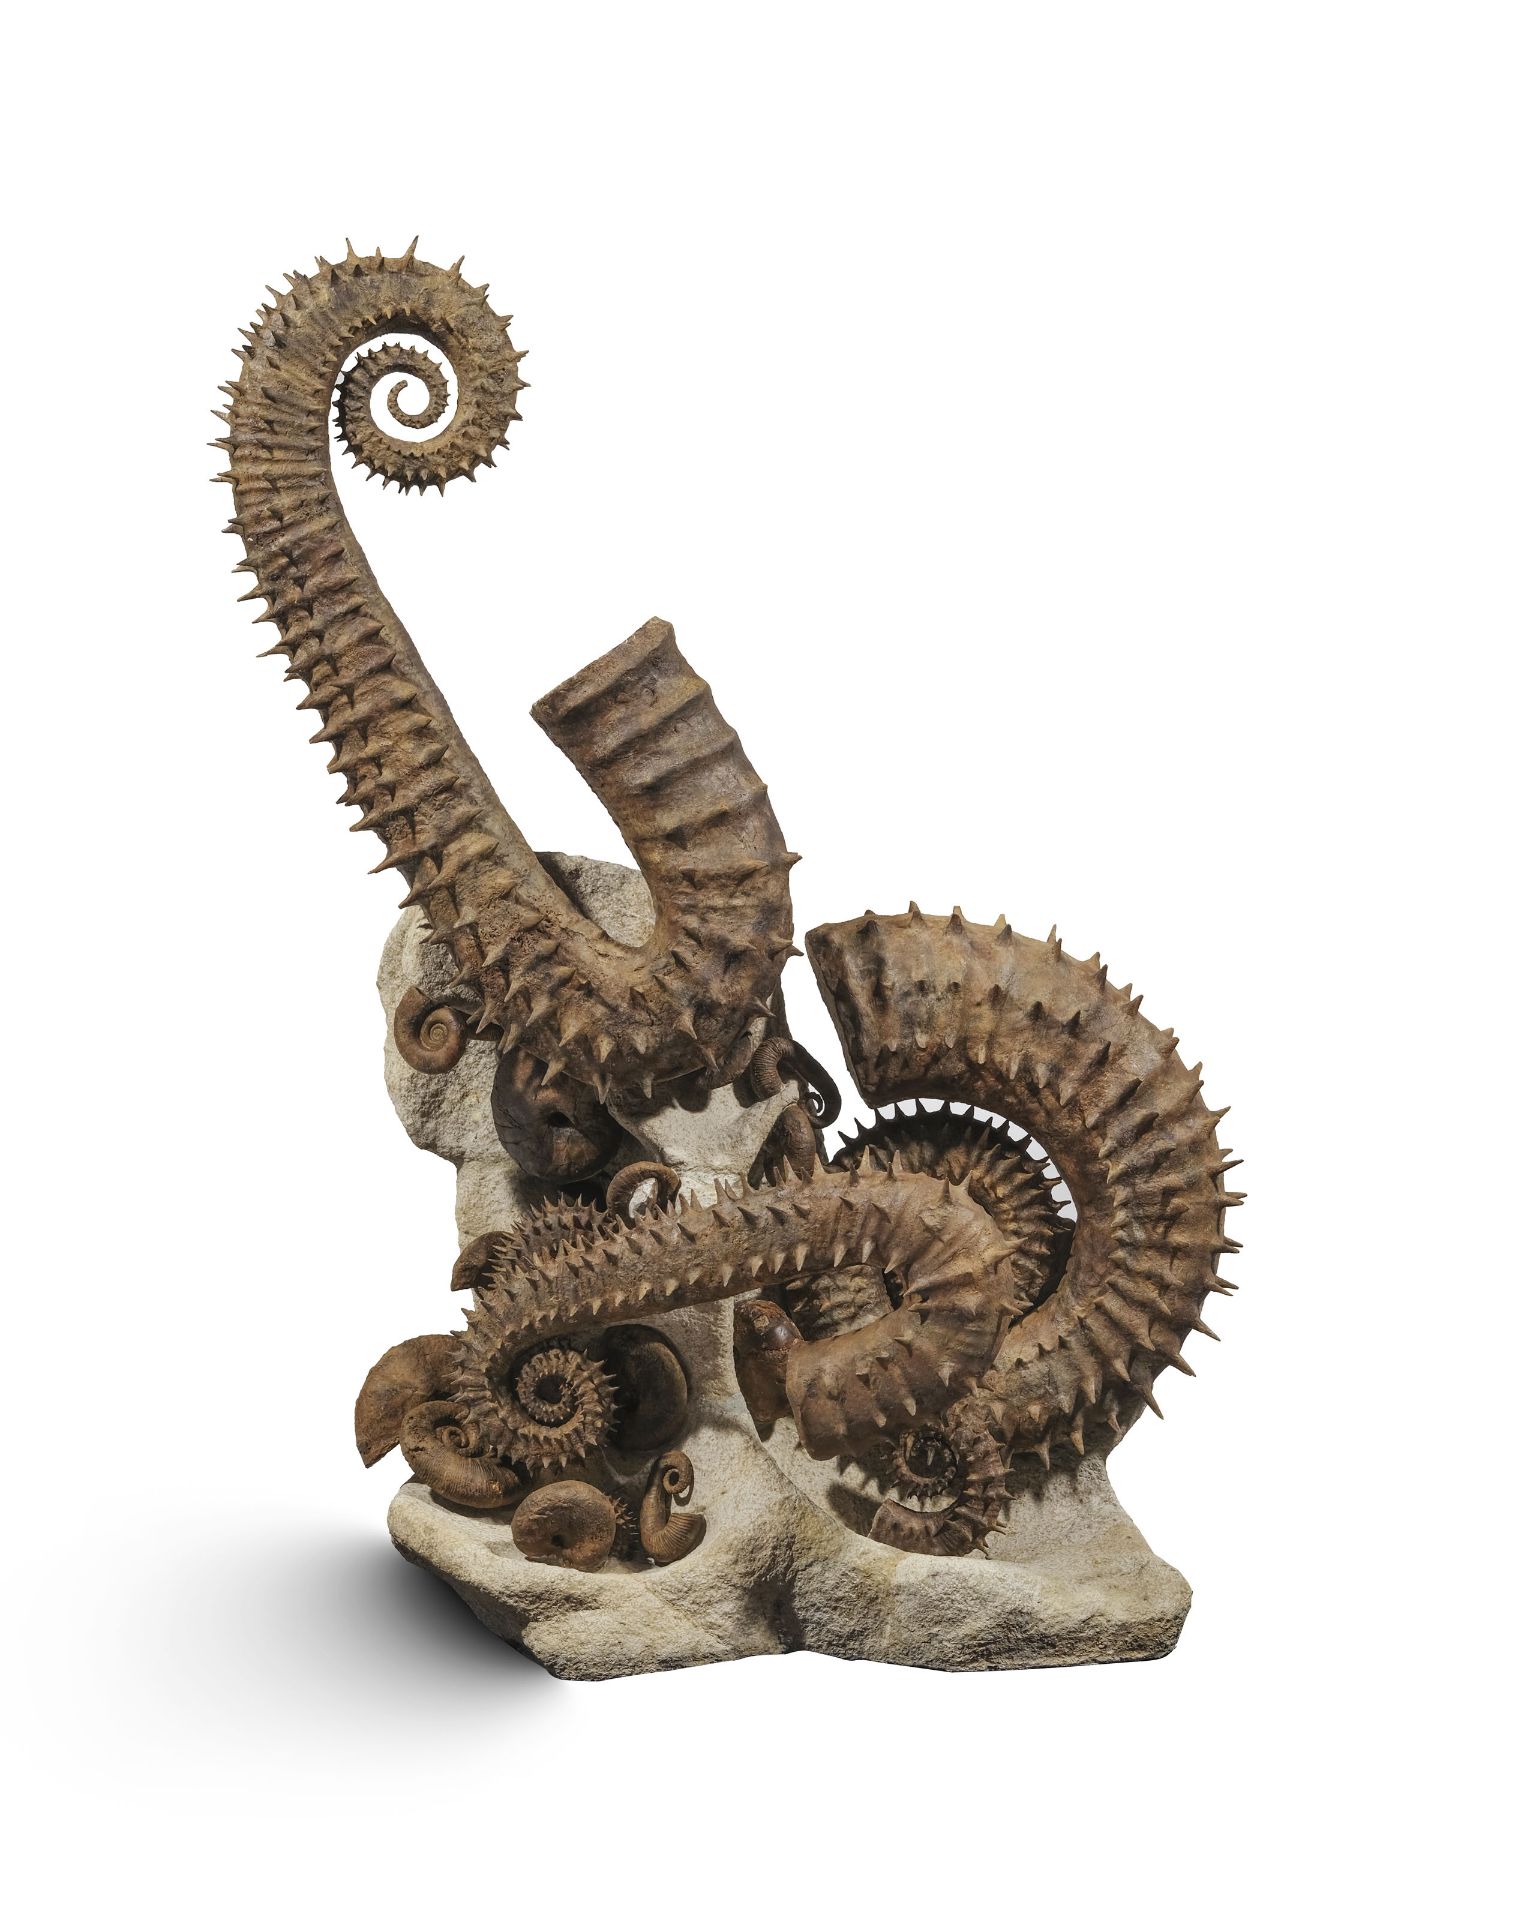 Cimetière marin d'ammonites déroulées épineuses, Maroc (région d'Agadir), h. 105 cm